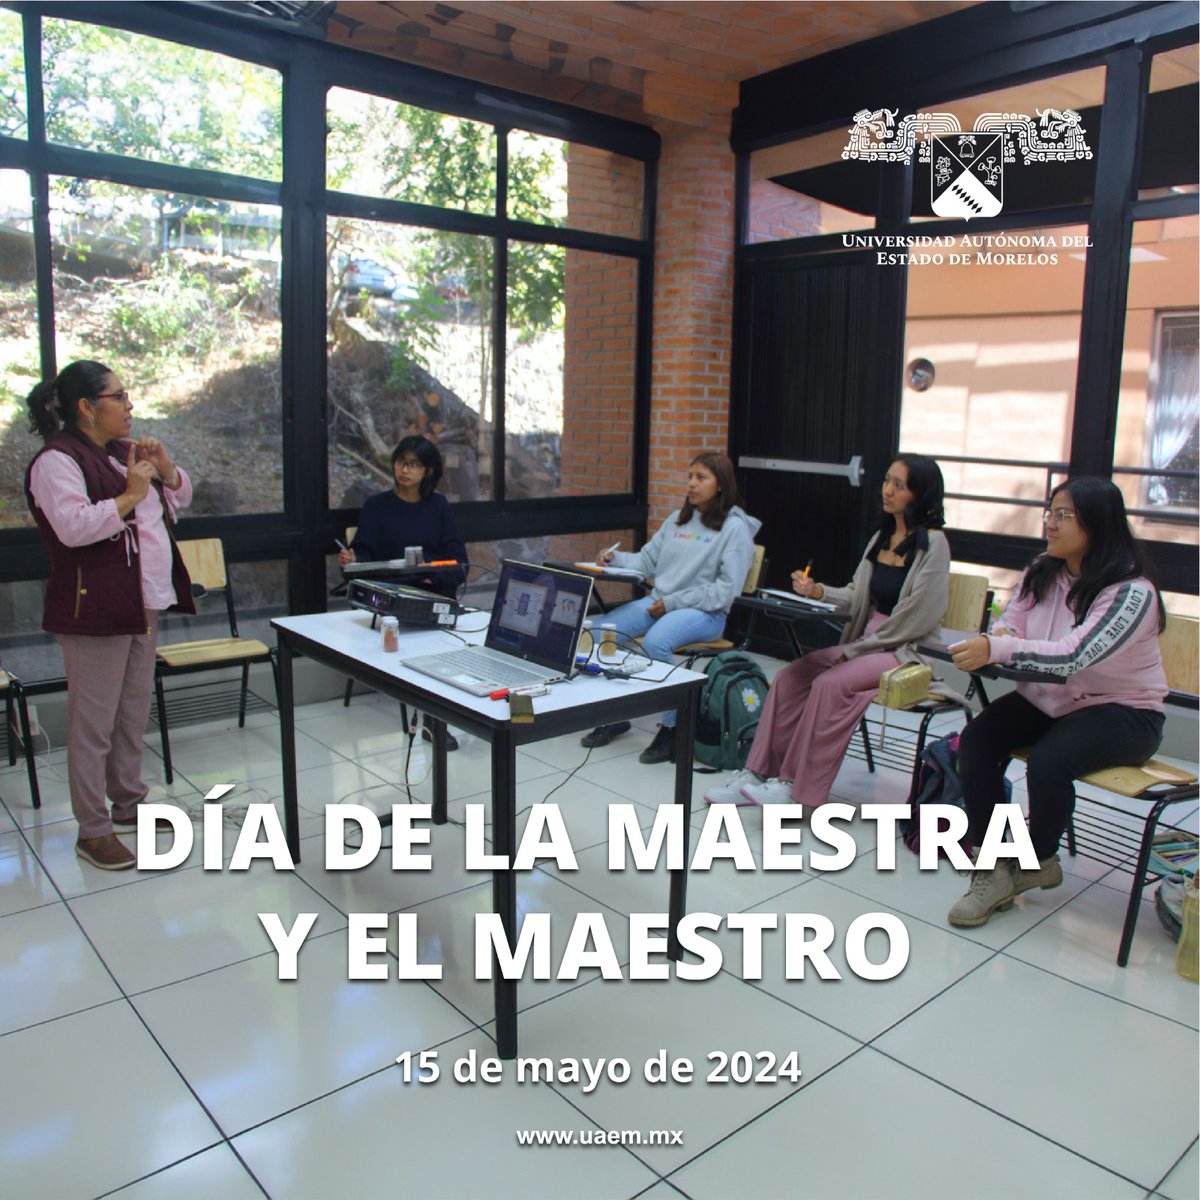 La Universidad Autónoma del Estado de Morelos #UAEM expresa su más amplia felicitación y reconocimiento a quienes trabajan con sentido de transformar, innovar y consolidar la práctica docente. ¡Feliz #DíadelaMaestrayelMaestro! #SomosUAEM